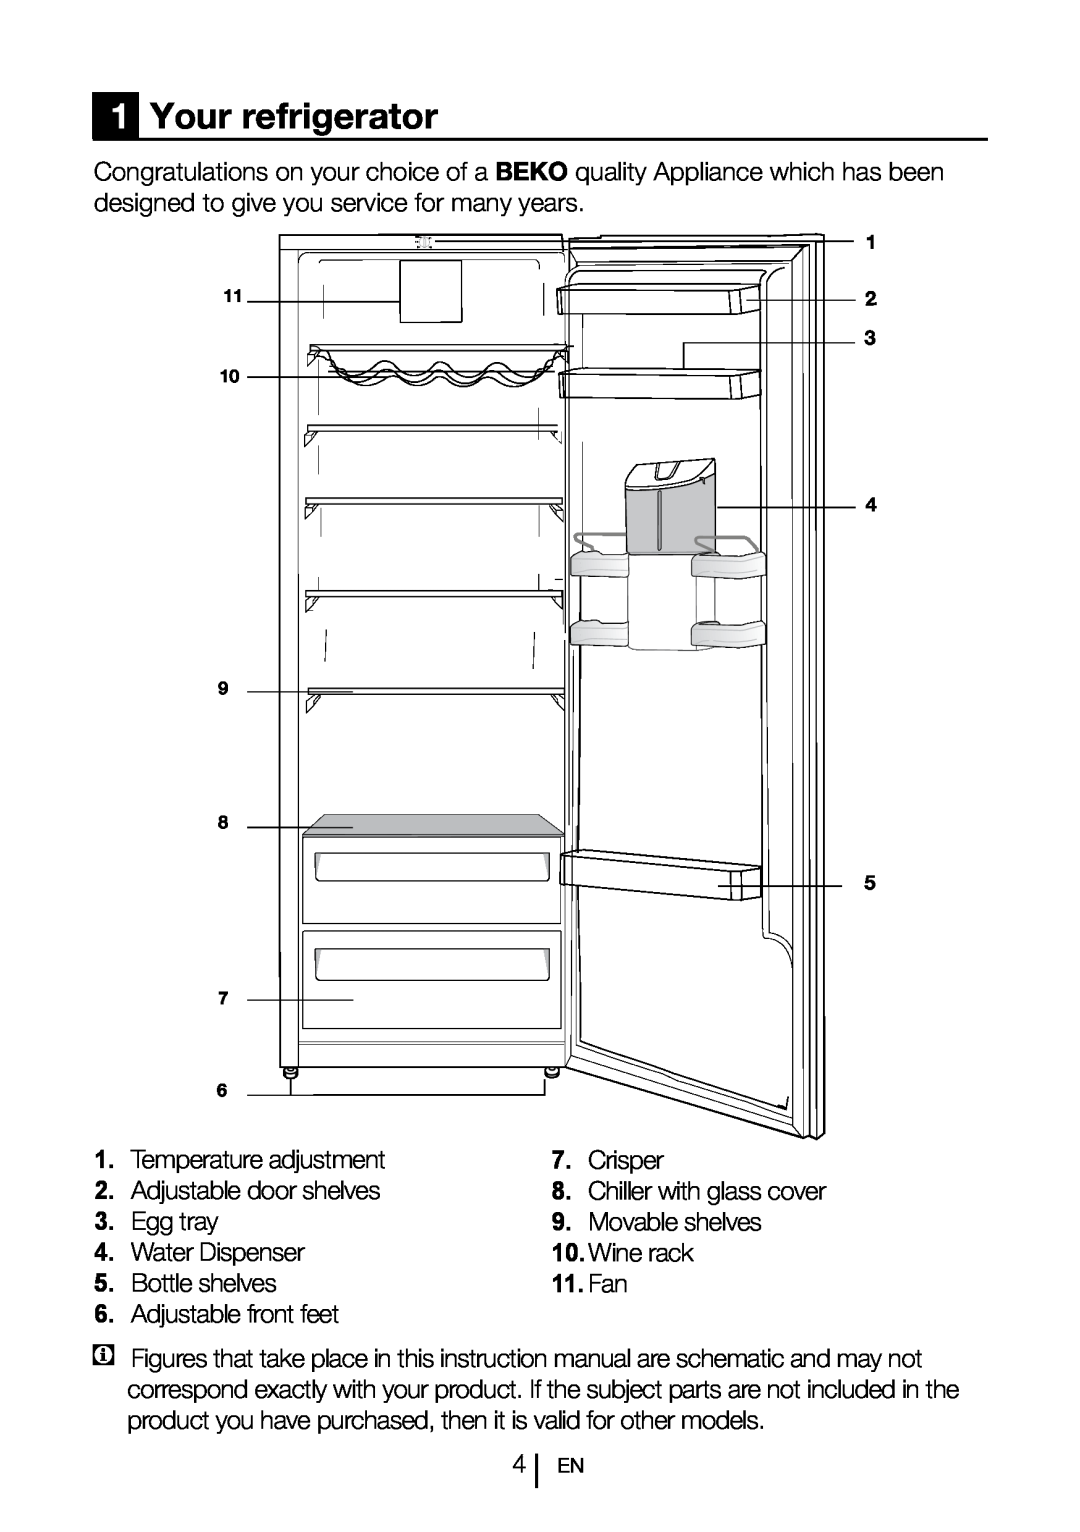 Beko LXD 6155 S manual 1Your refrigerator, Fan 